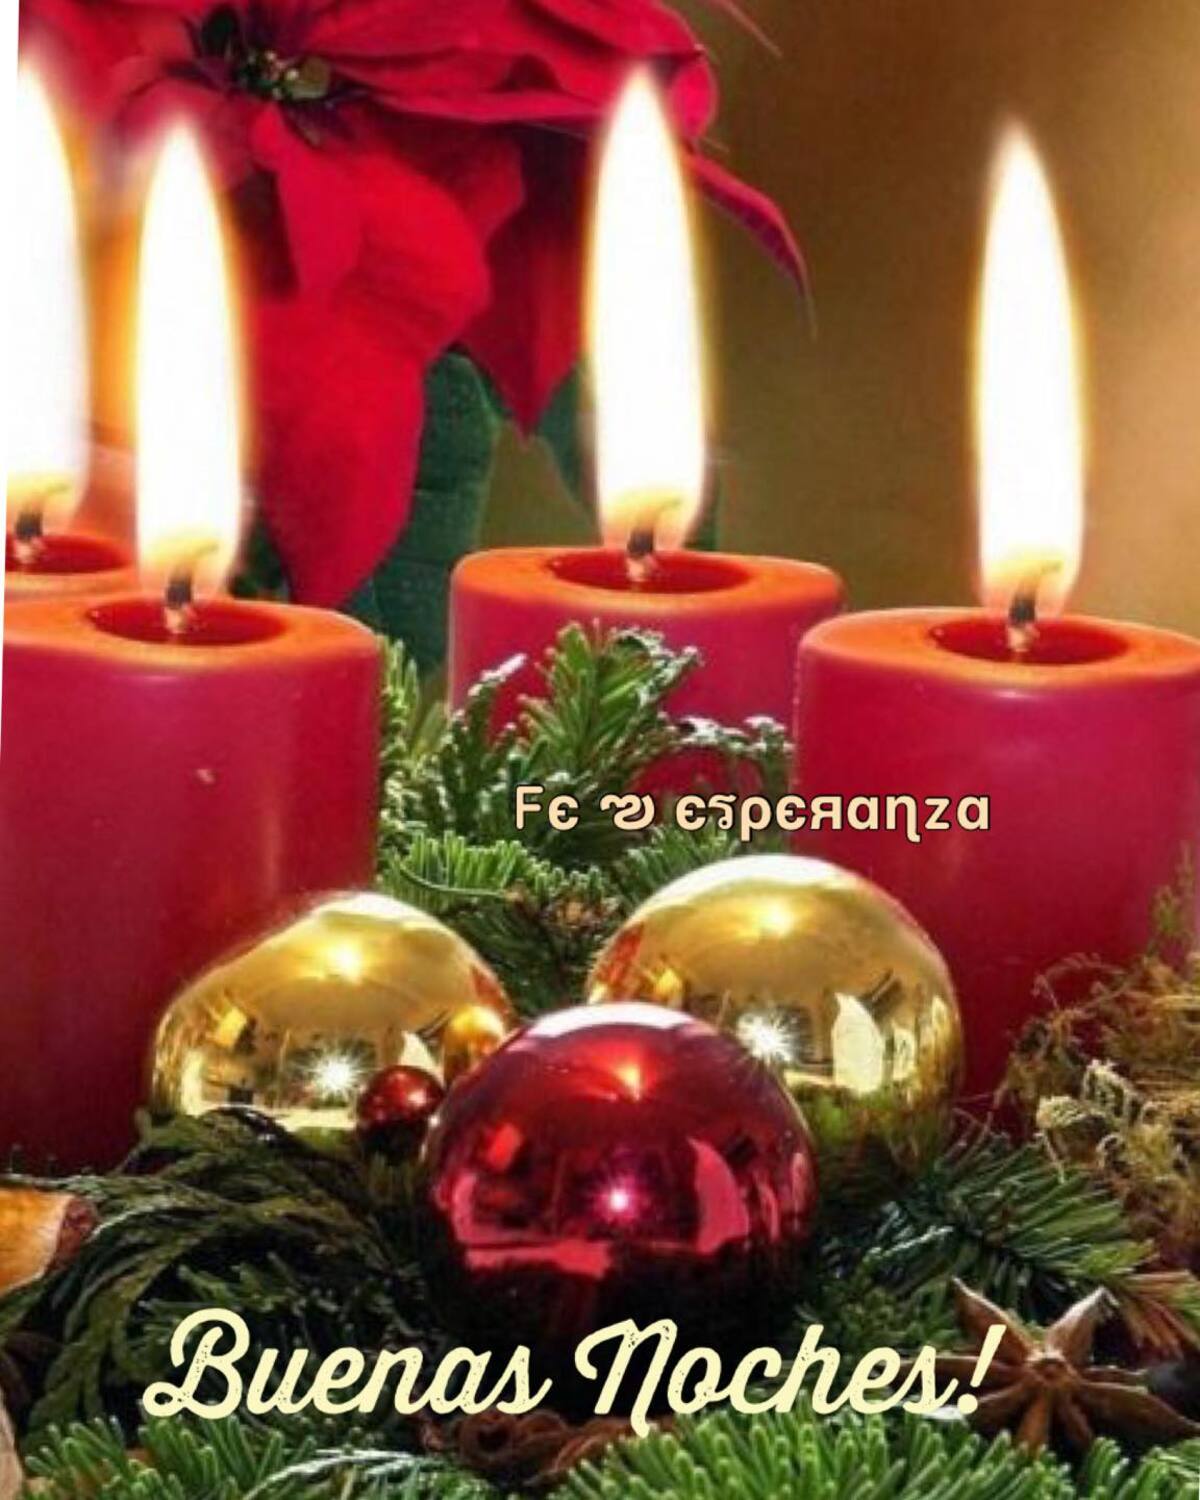 Ímágenes navideñas para desear Buenas Noches (2) Archives -  